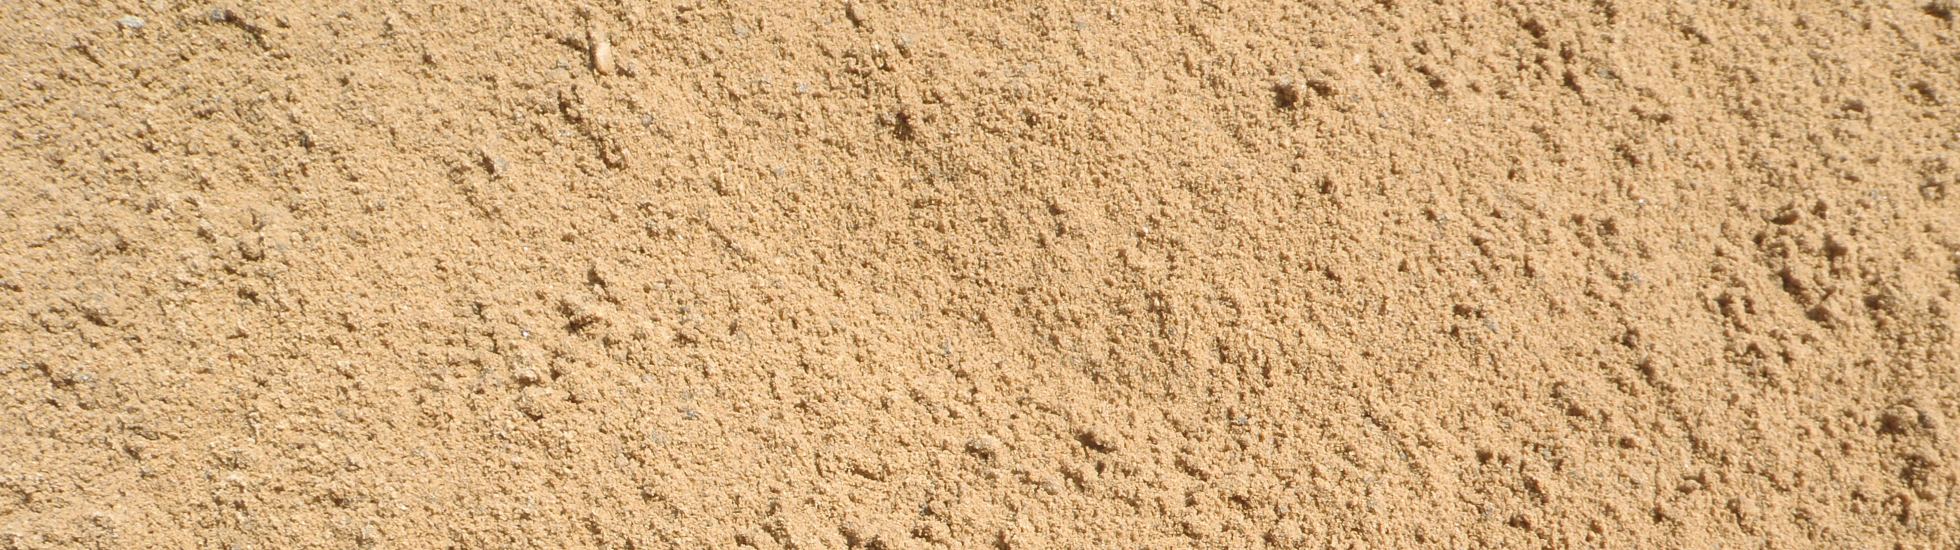 Een hekel hebben aan druiven volwassen ZANDBESTELLEN - RM Bestrating zand bestellen den helder Julianadorp